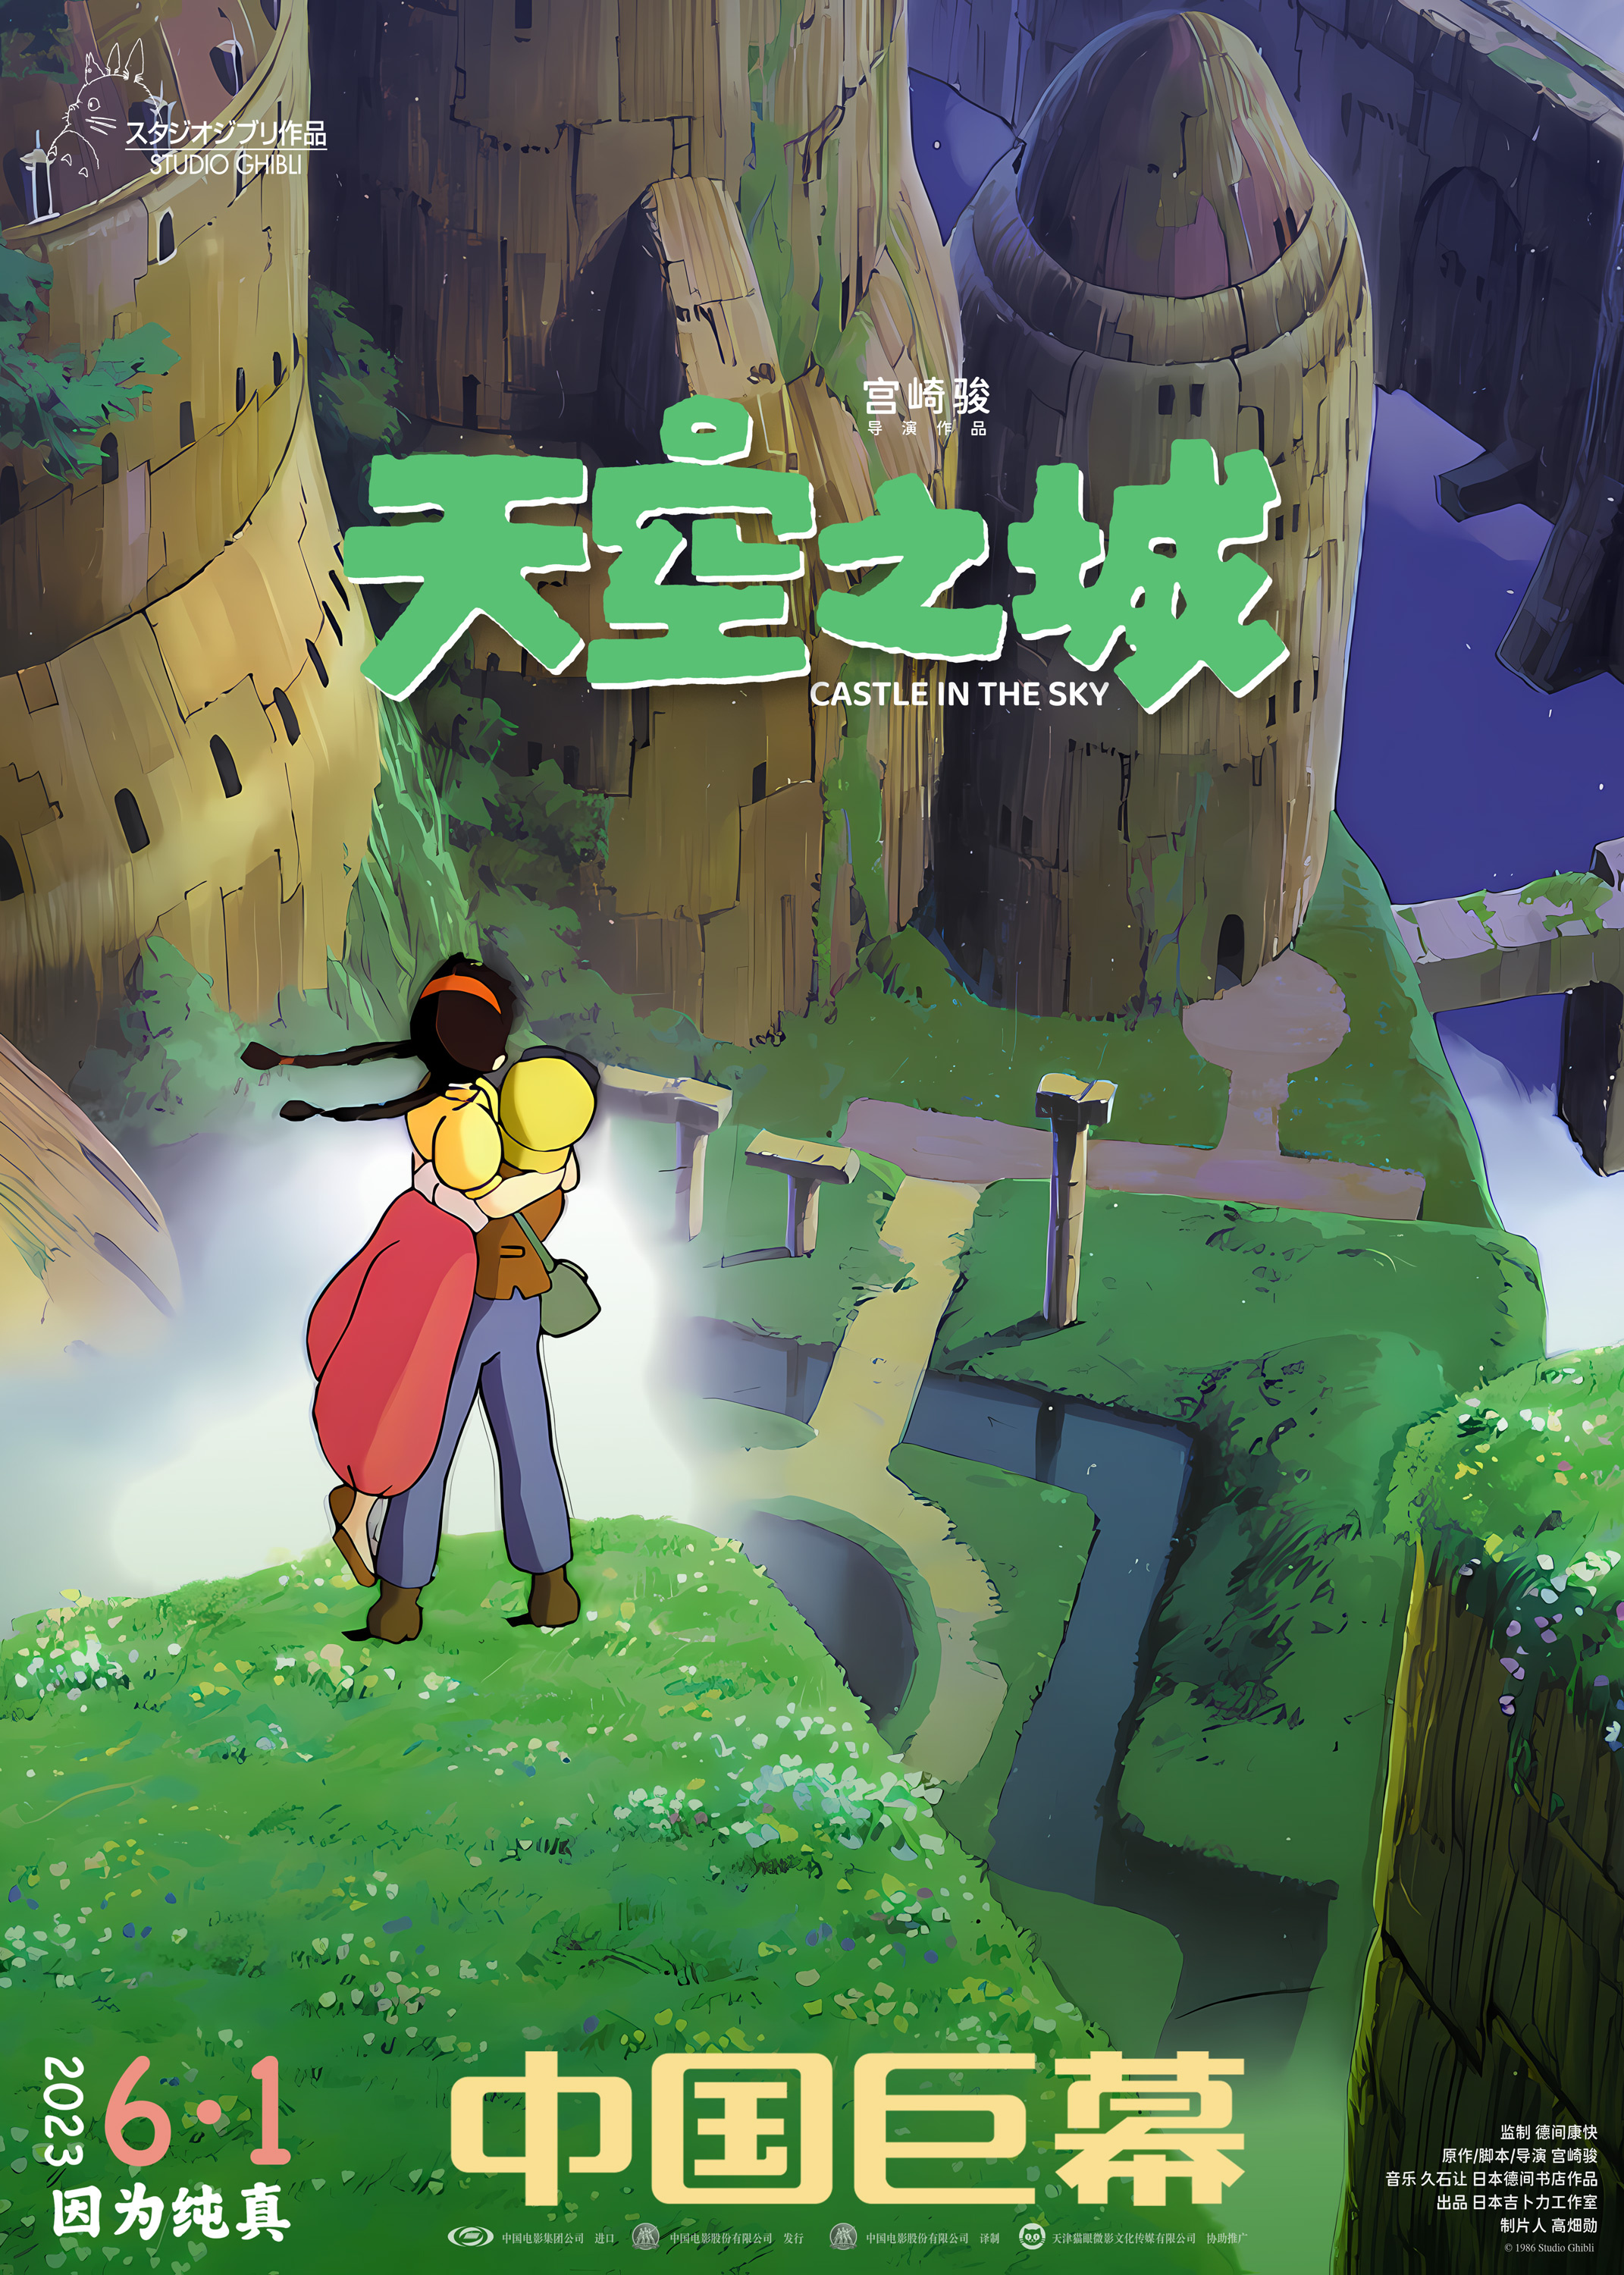 宫崎骏经典动画《天空之城》曝制式宣传图 6.1上映